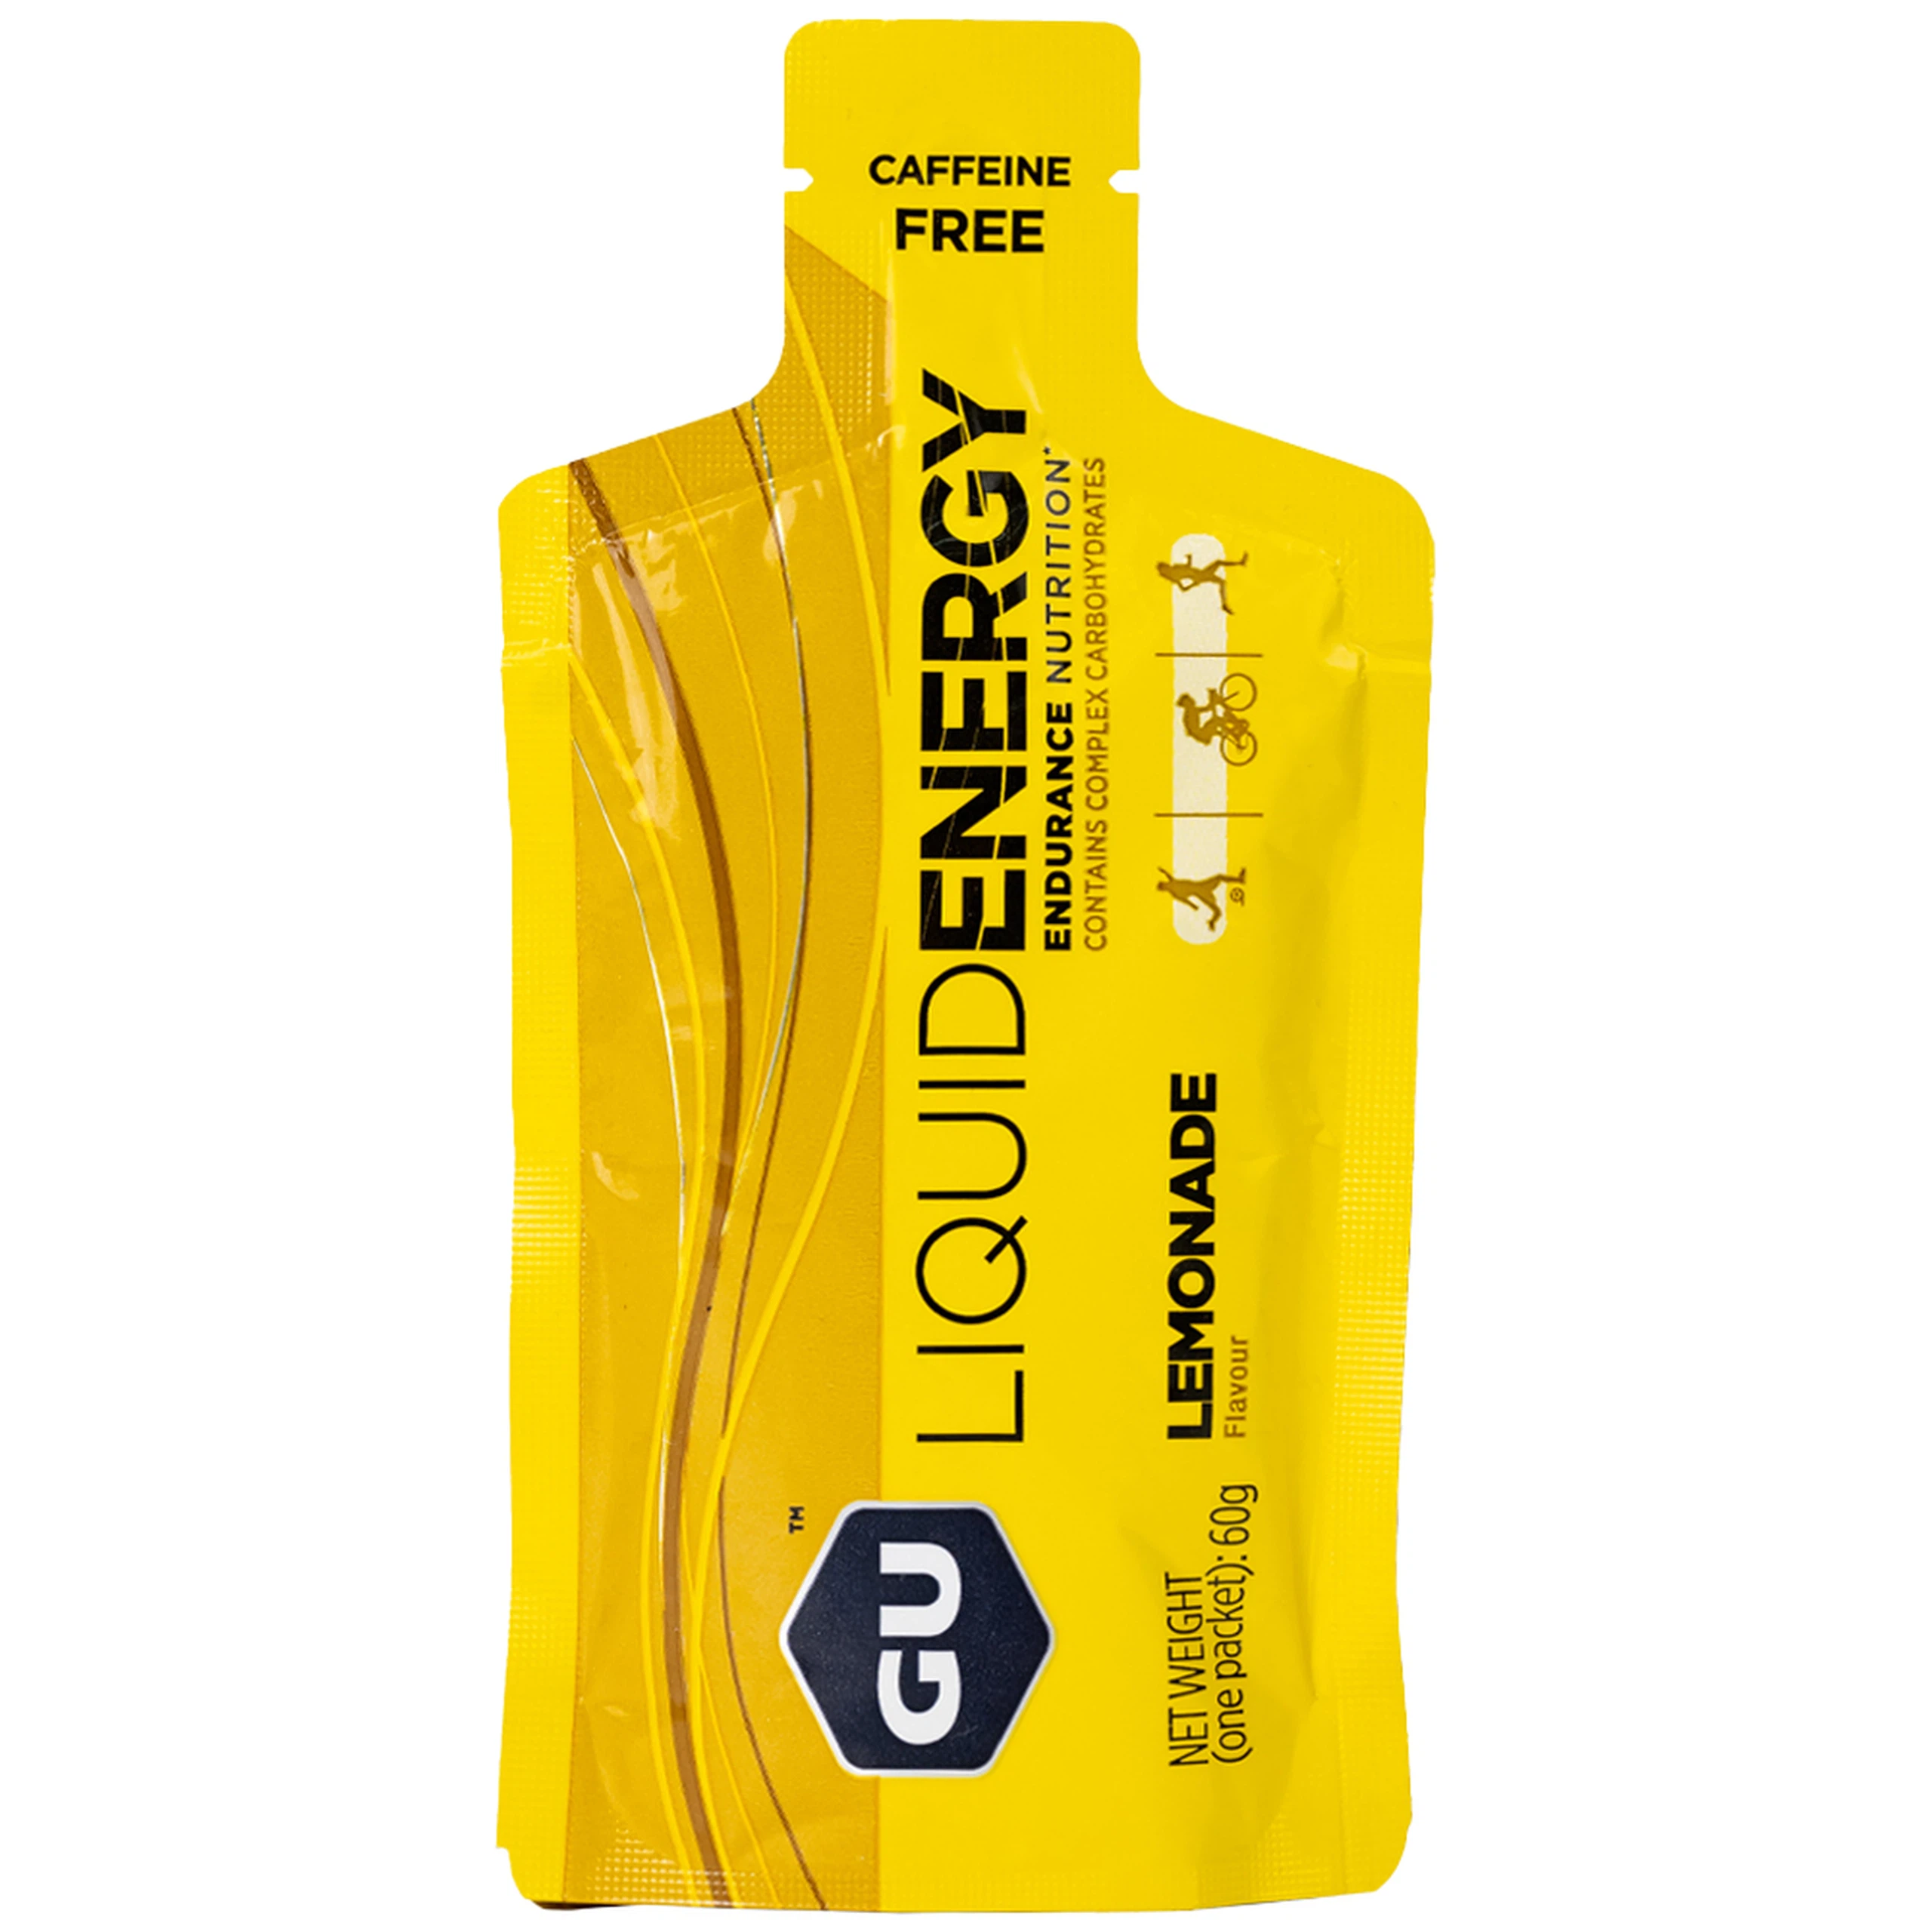 Thực phẩm bổ sung GU Gel Liquid Energy Lemonade 60g bổ sung năng lượng trong các hoạt động thể thao 